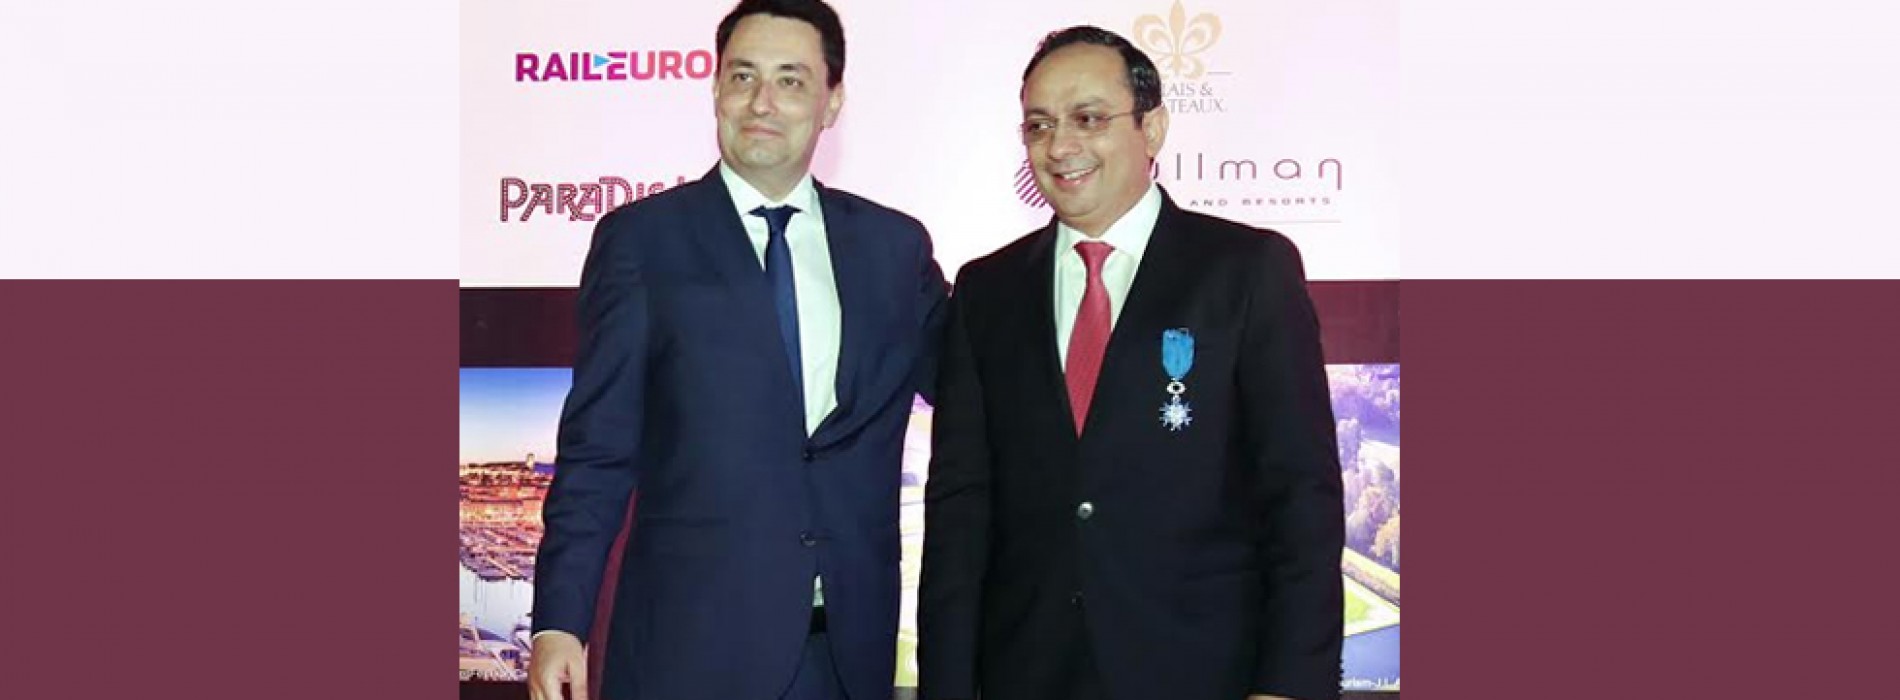 President of France François Hollande bestows the prestigious National Order of Merit on Zubin Karkaria